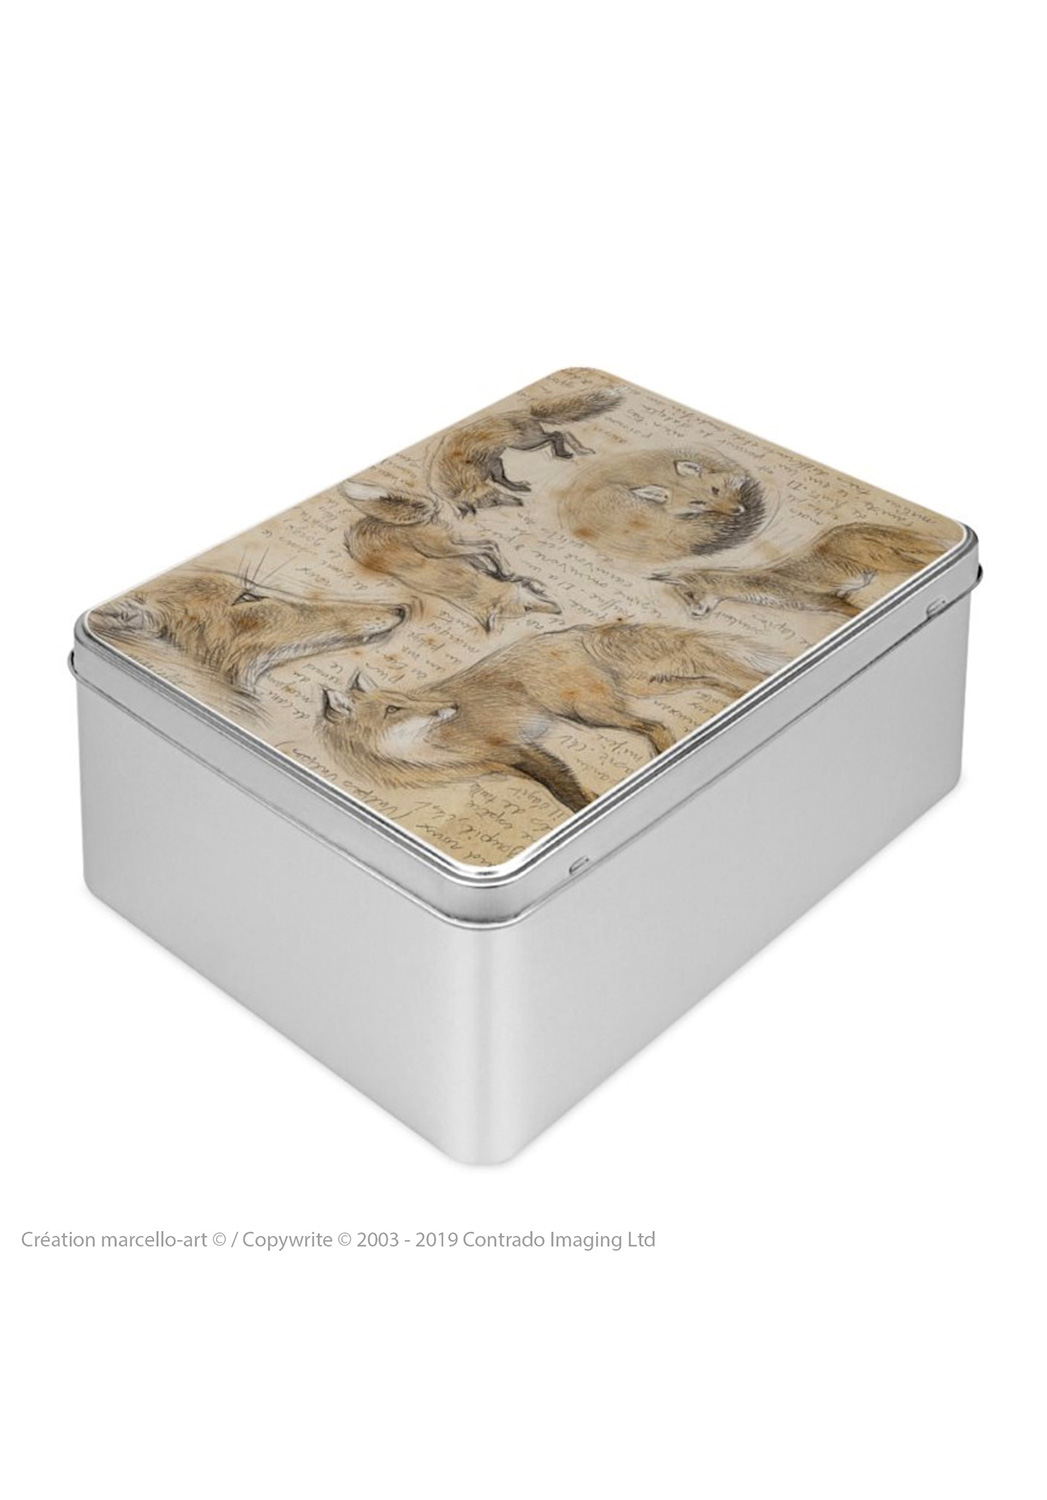 Marcello-art : Boîtes à biscuits rectangulaires Boîte à biscuit rectangulaire 336 renard roux